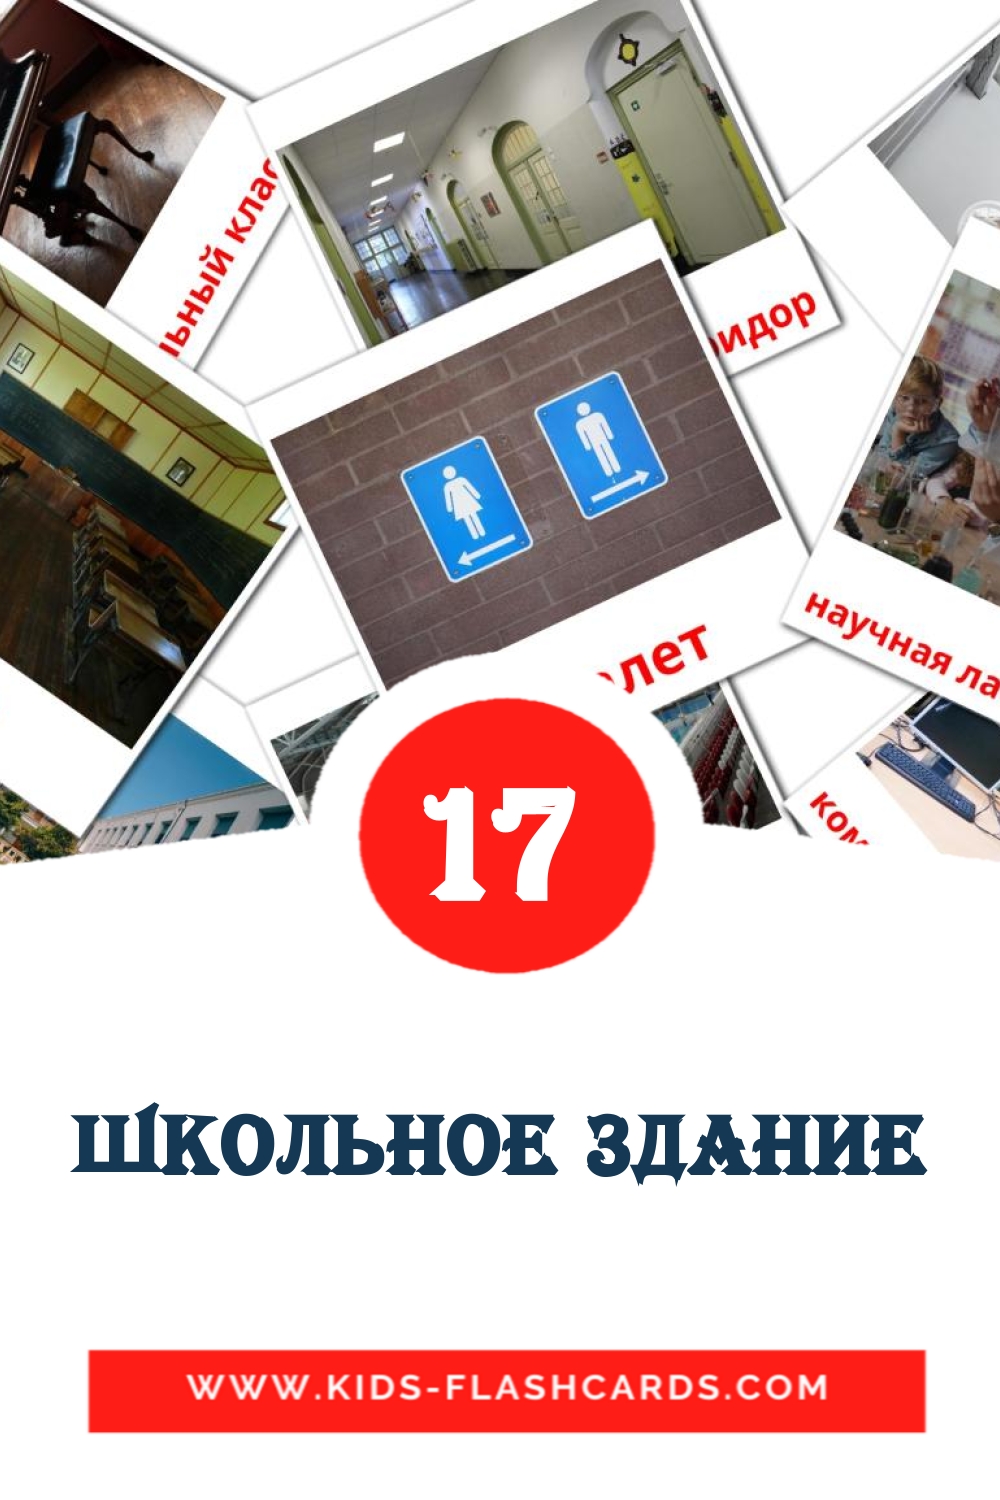 17 carte illustrate di Школьное здание per la scuola materna in russo